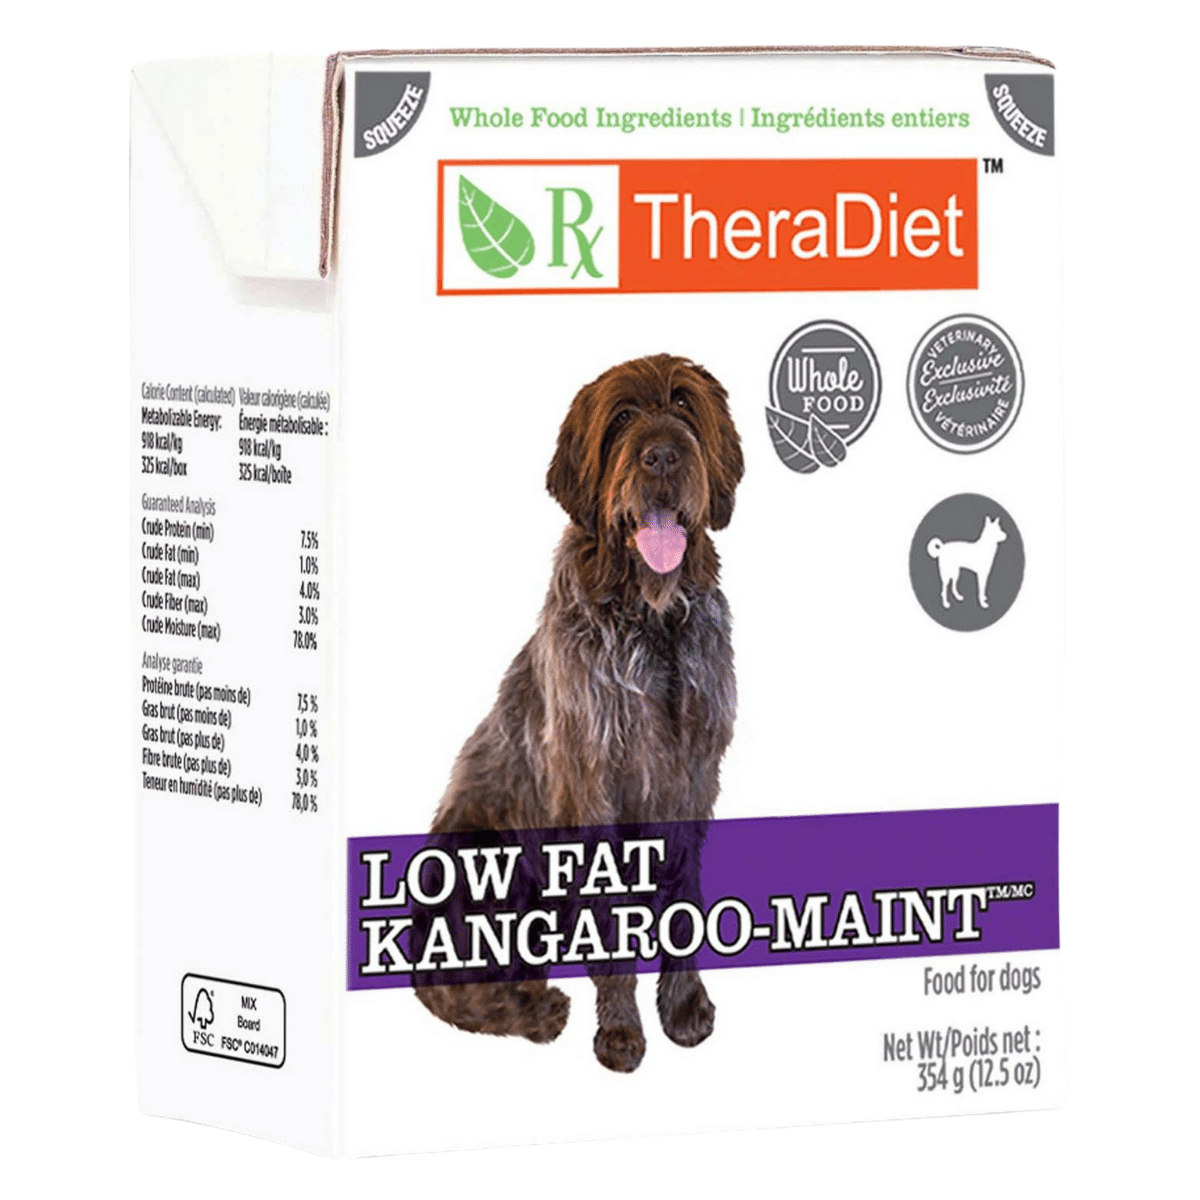 Low Fat Kangaroo-MAINT Chunky Stew Dog Food